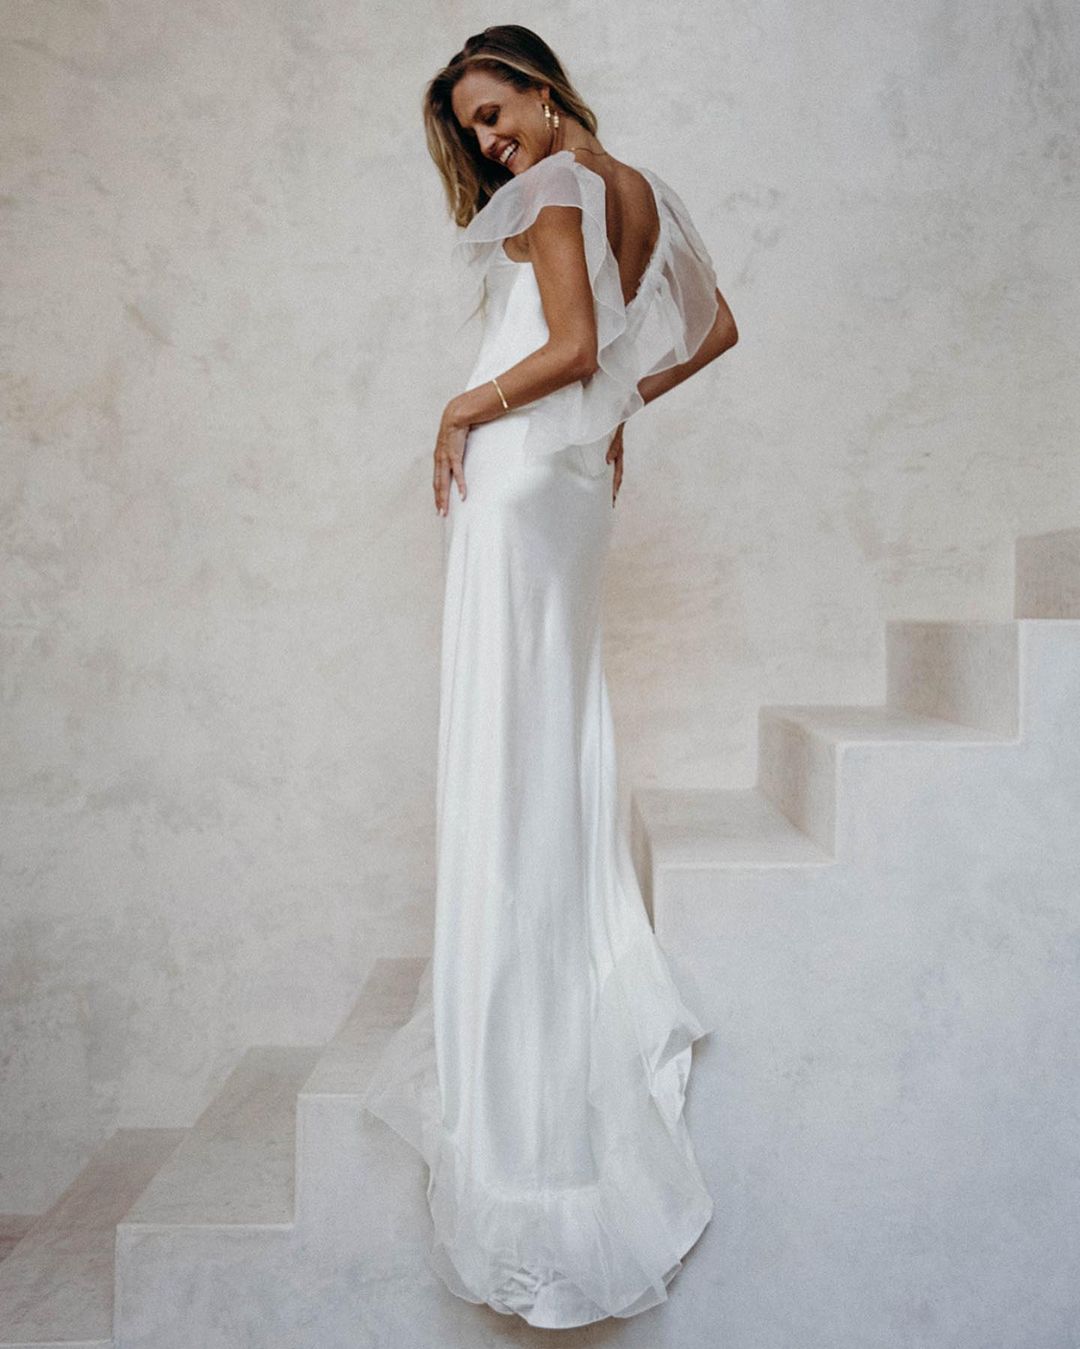 A La Robe Bridal Musings Editors Favorite Wedding Dresses 2021 2022 Brides Claire Eliza Christina Castello 15 - 20 chiếc váy cưới đẹp nhất theo biên tập viên của chúng tôi